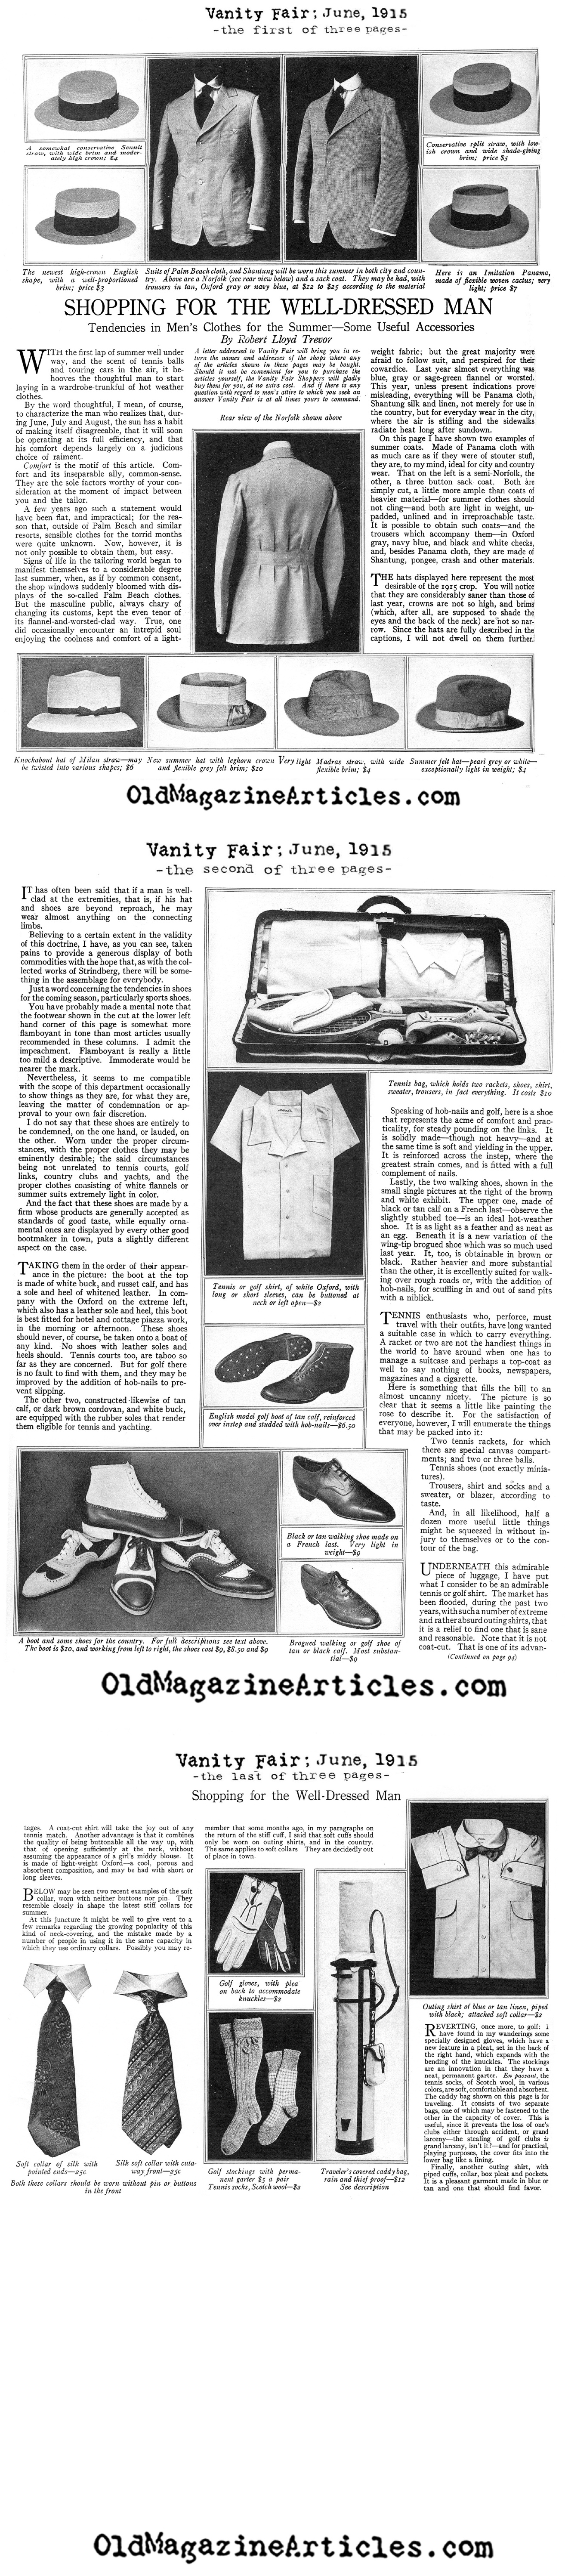 Men's Summer Clothing for 1915  (Vanity Fair Magazine, 1915)